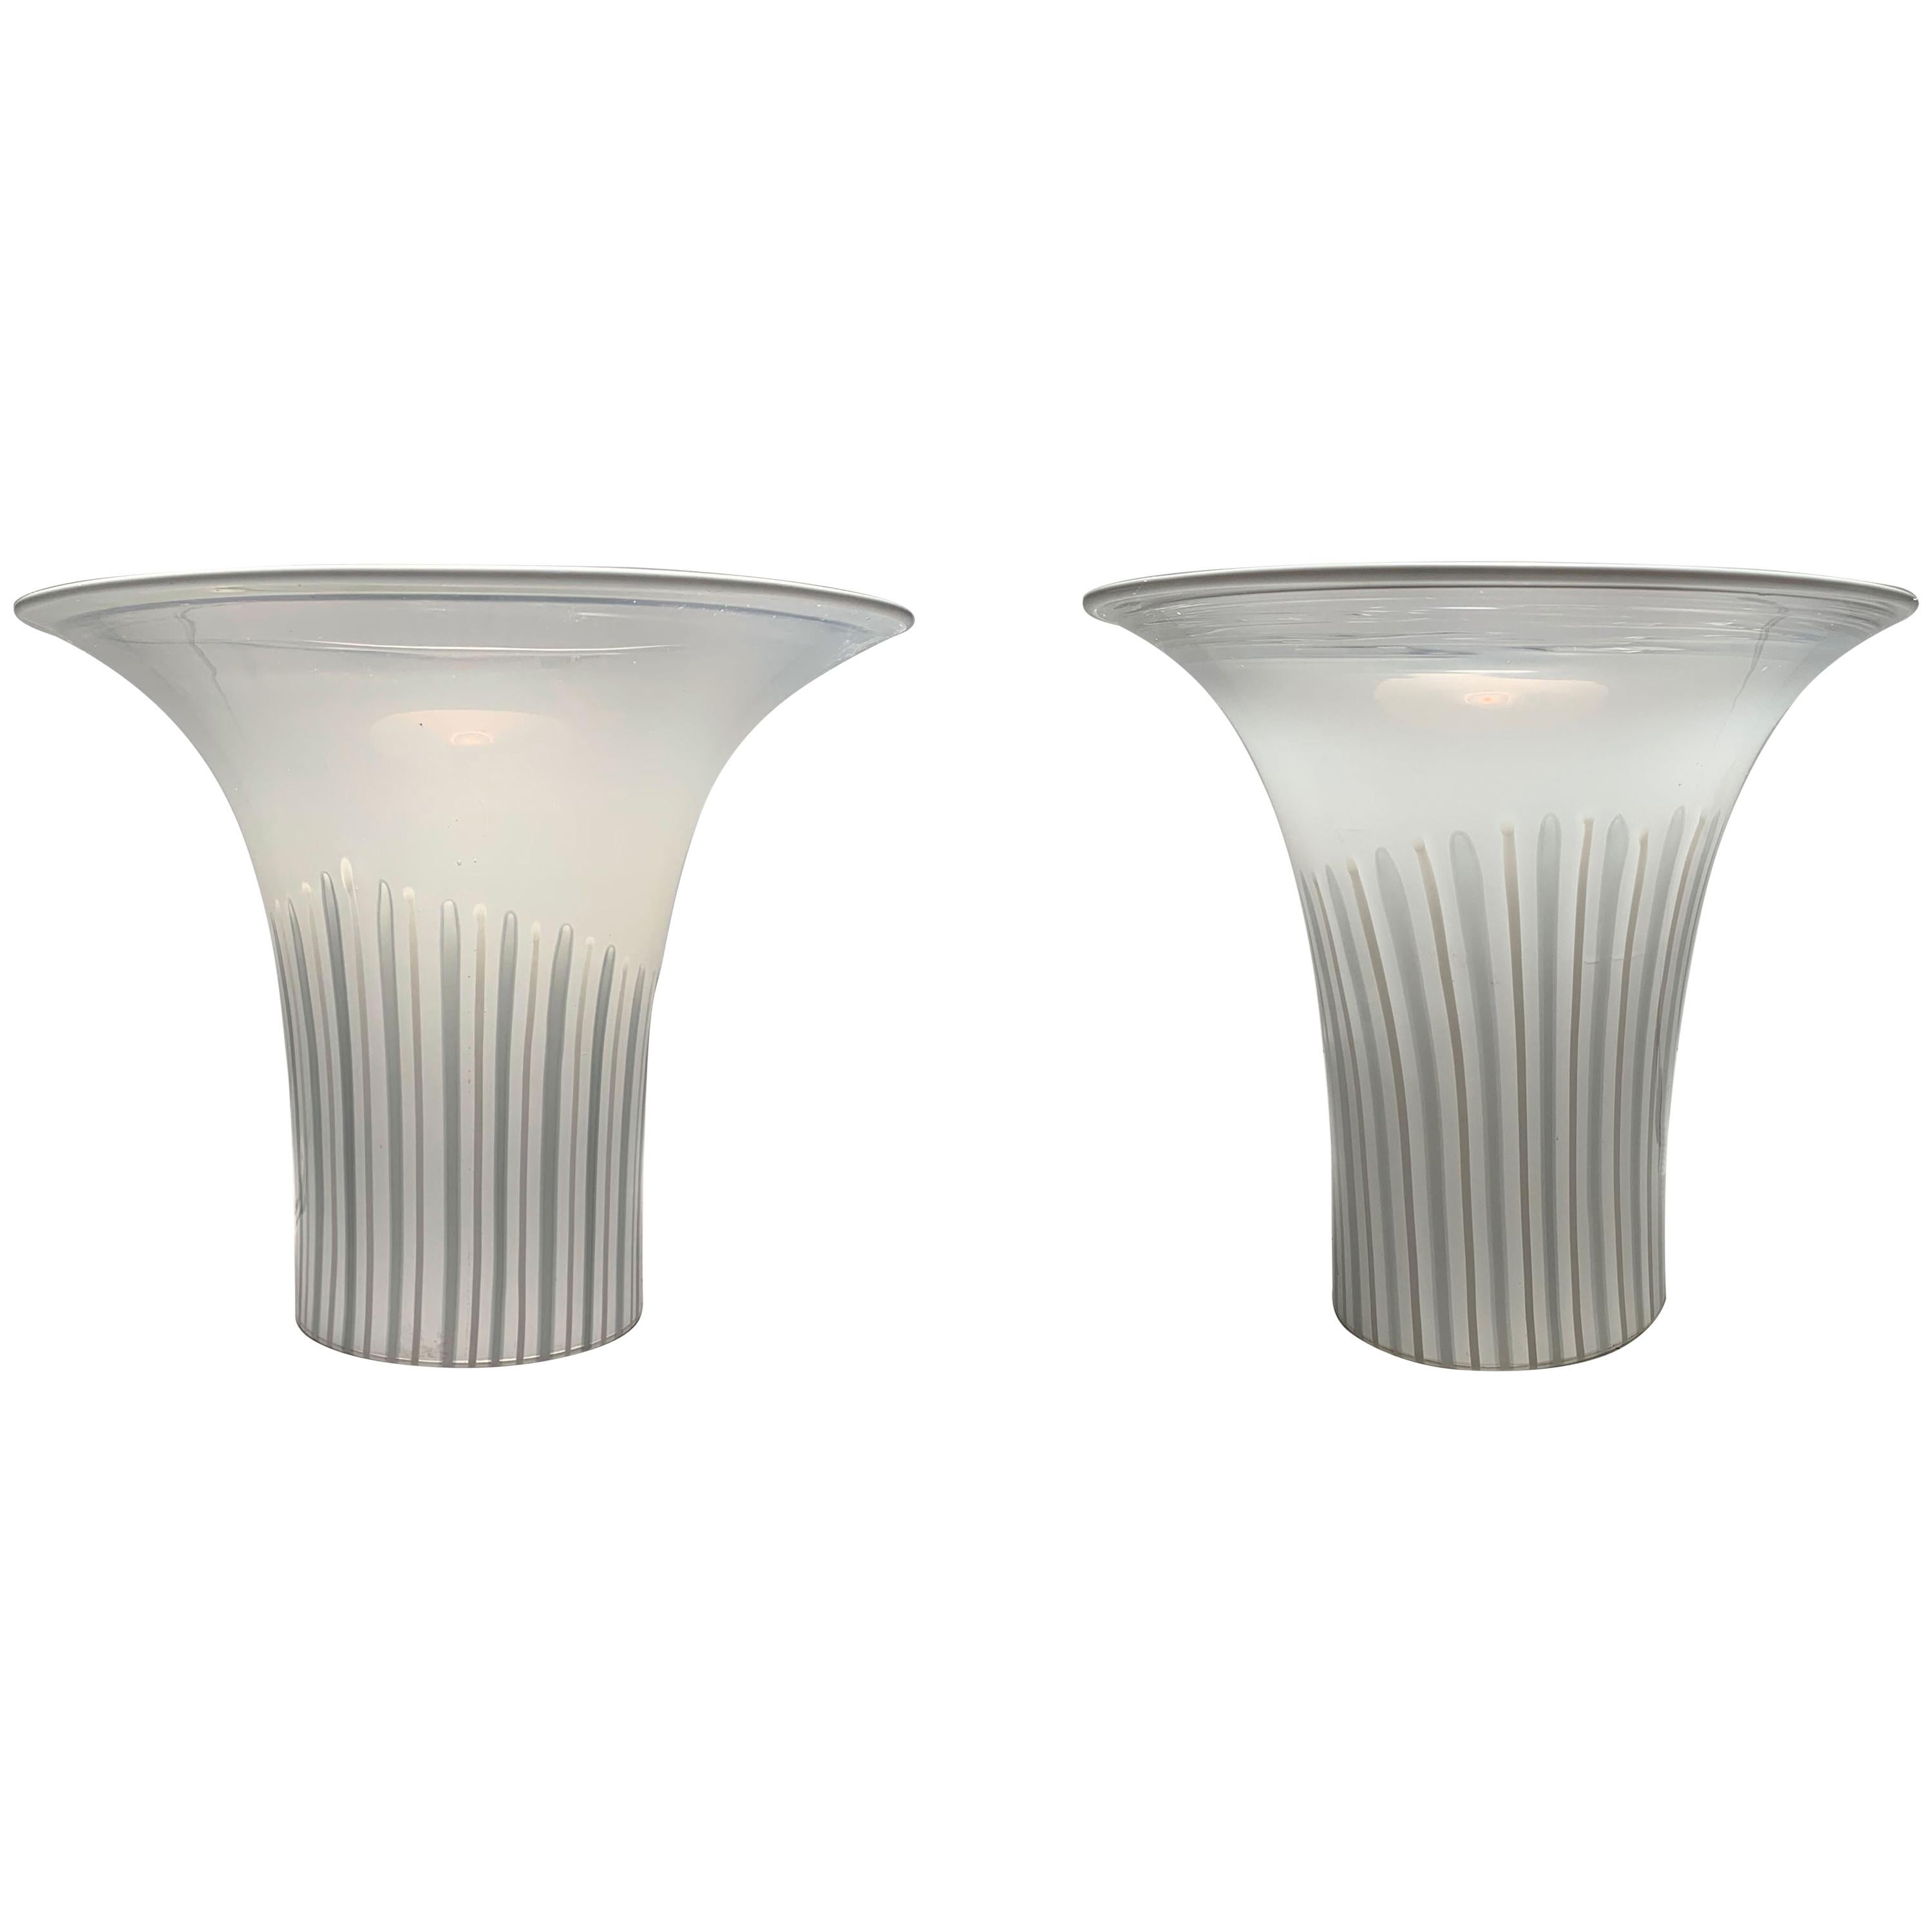 Torchères de table en verre de Murano. Lampes d'éclairage doux pour l'intérieur. Lampes en verre italiennes.

Peut-être par Vistosi pour Venini